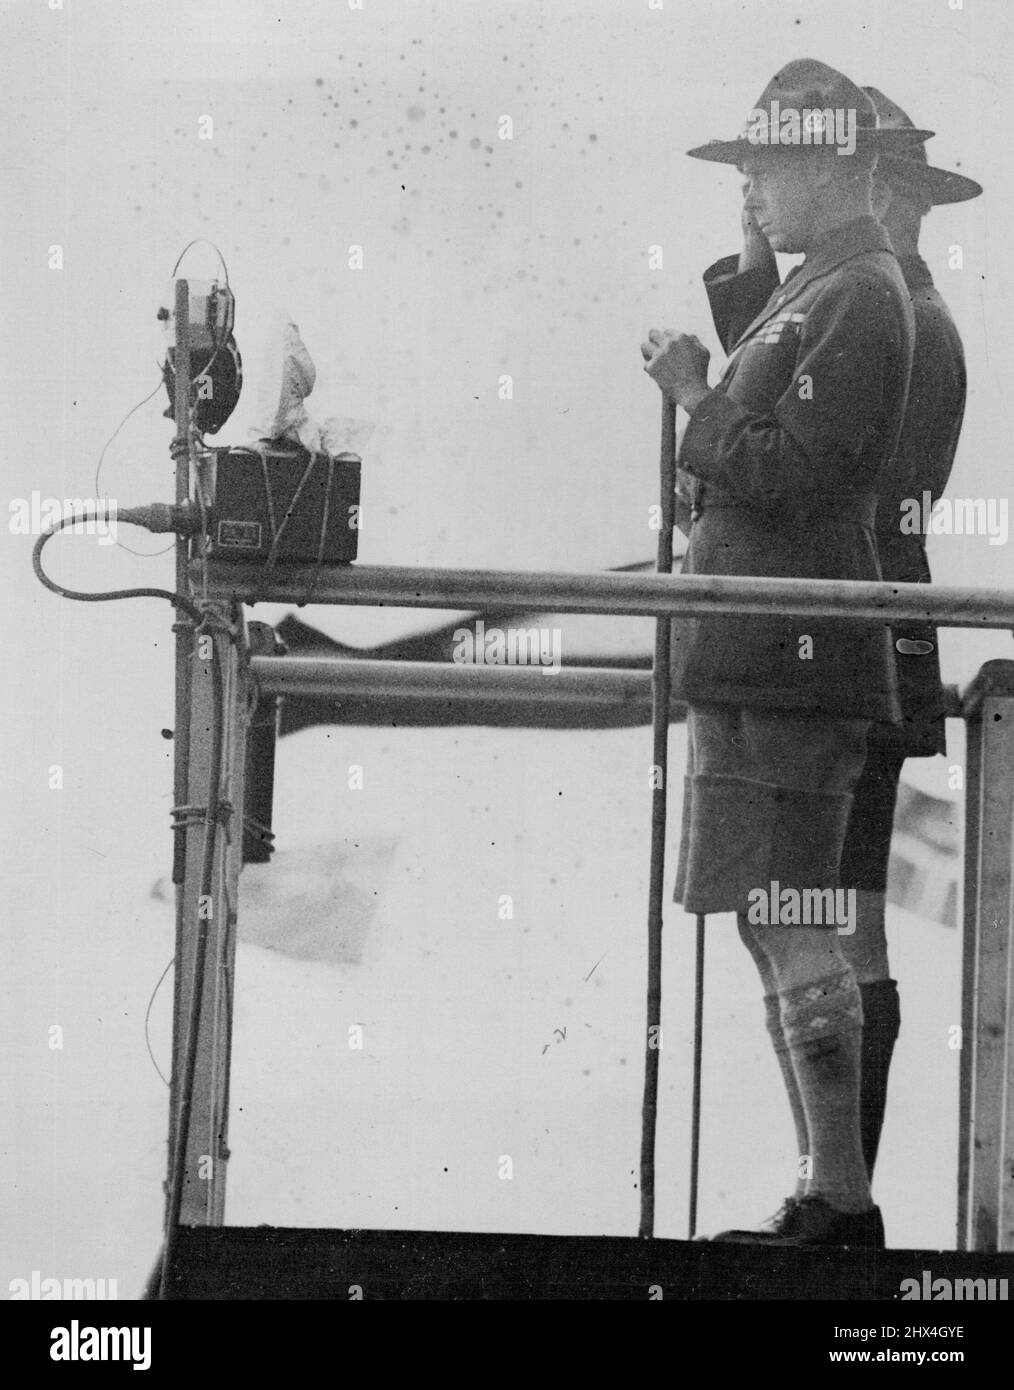 Prince of Wales prende scouts saluto. Spettacoli fotografici: Principe del Galles e Gen. Sir Robert Baden Powell che prende il saluto. Il raduno dei Pageant delle Nazioni si è svolto presso il Boy Scouts World Jamboree a Birkenhead questo pomeriggio. Agosto 02, 1929. (Foto della stampante associata). Foto Stock